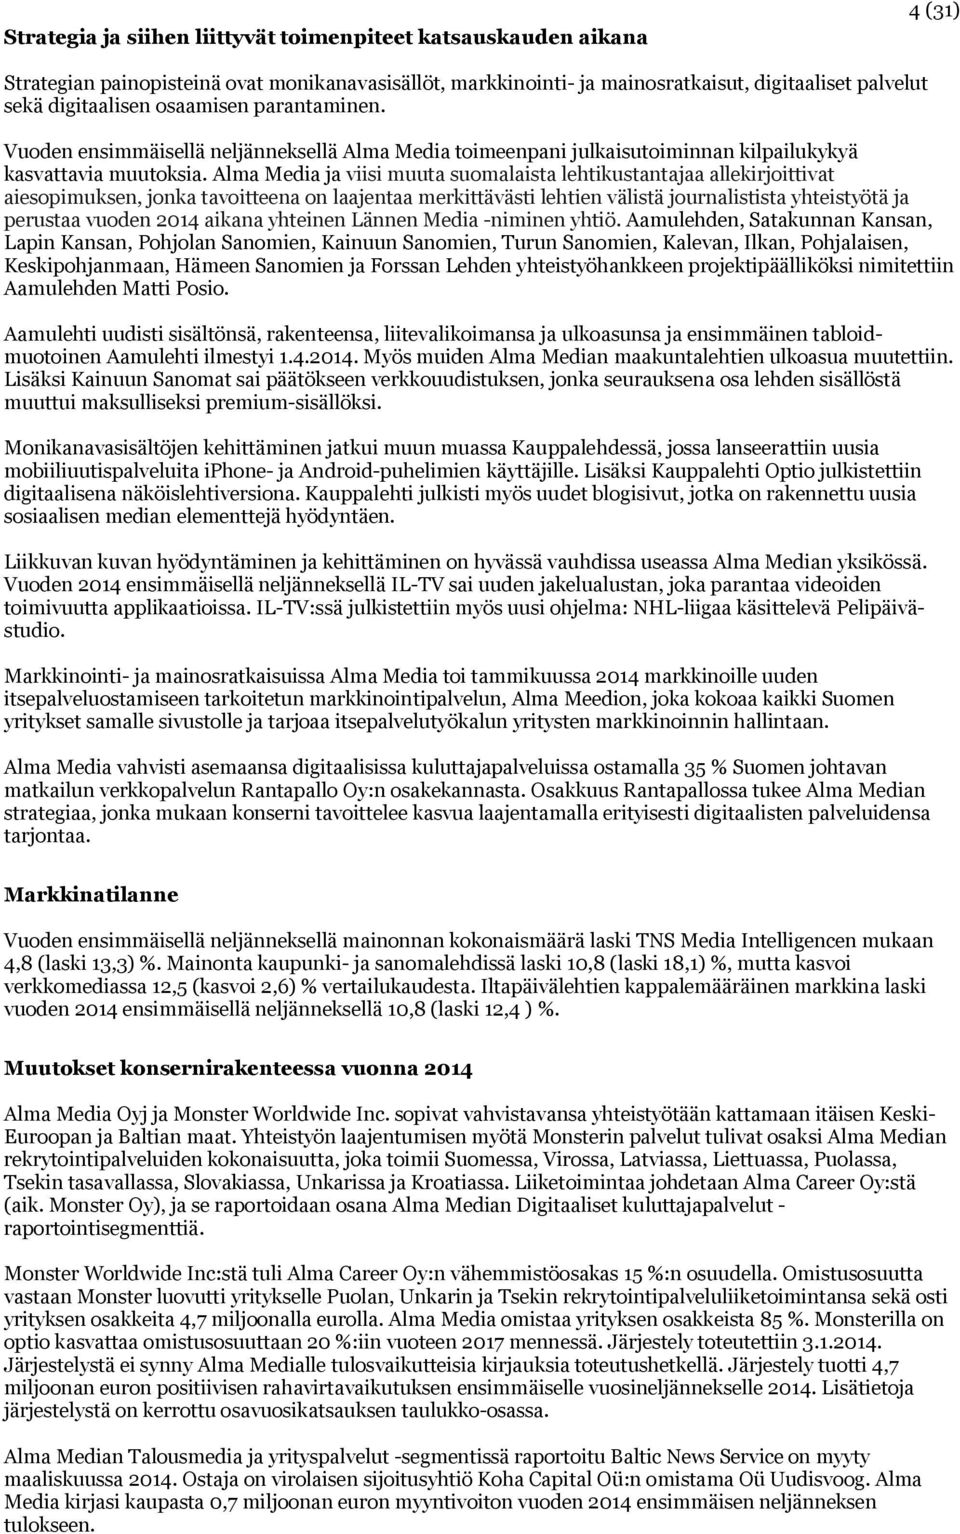 Alma Media ja viisi muuta suomalaista lehtikustantajaa allekirjoittivat aiesopimuksen, jonka tavoitteena on laajentaa merkittävästi lehtien välistä journalistista yhteistyötä ja perustaa vuoden 2014